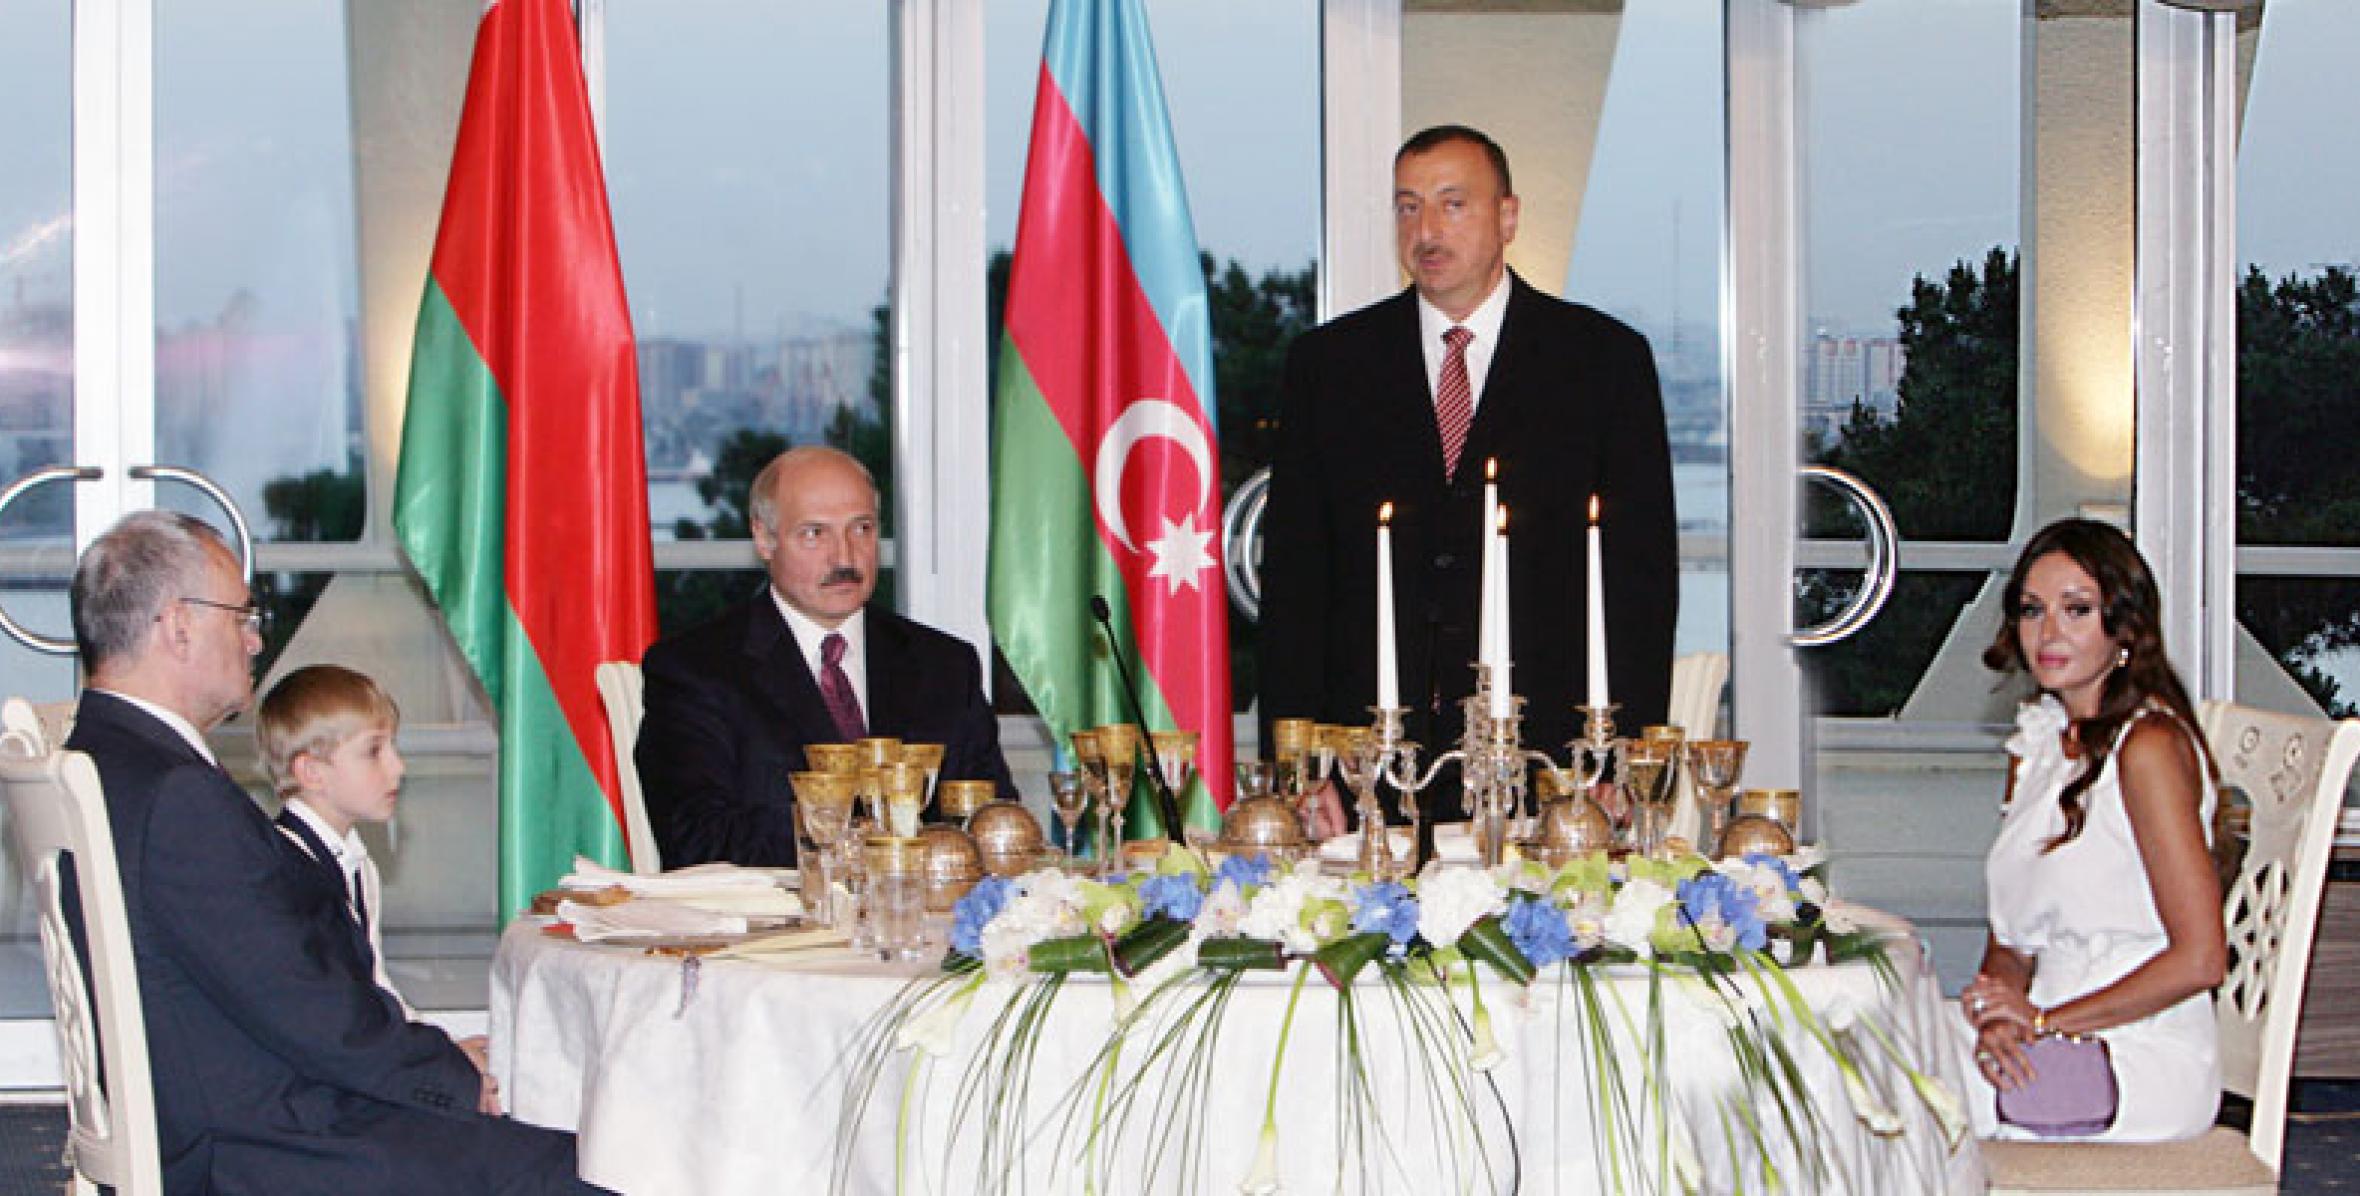 Был устроен официальный прием в честь Президента Беларуси Александра Лукашенко